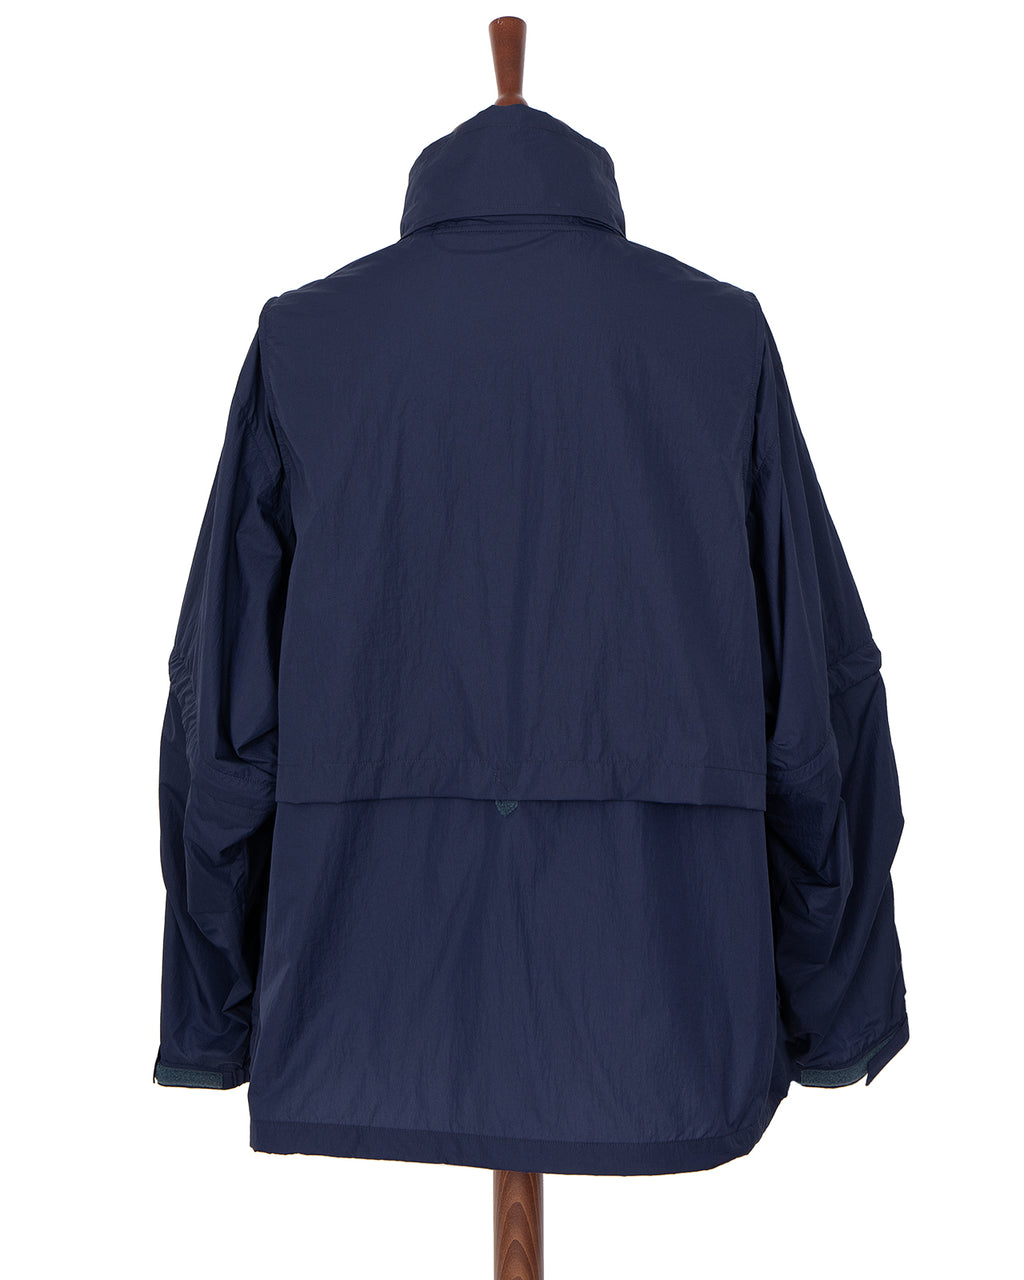 Daiwa PIER39 Tech Detachable Windbreaker Jacket, Charcoal